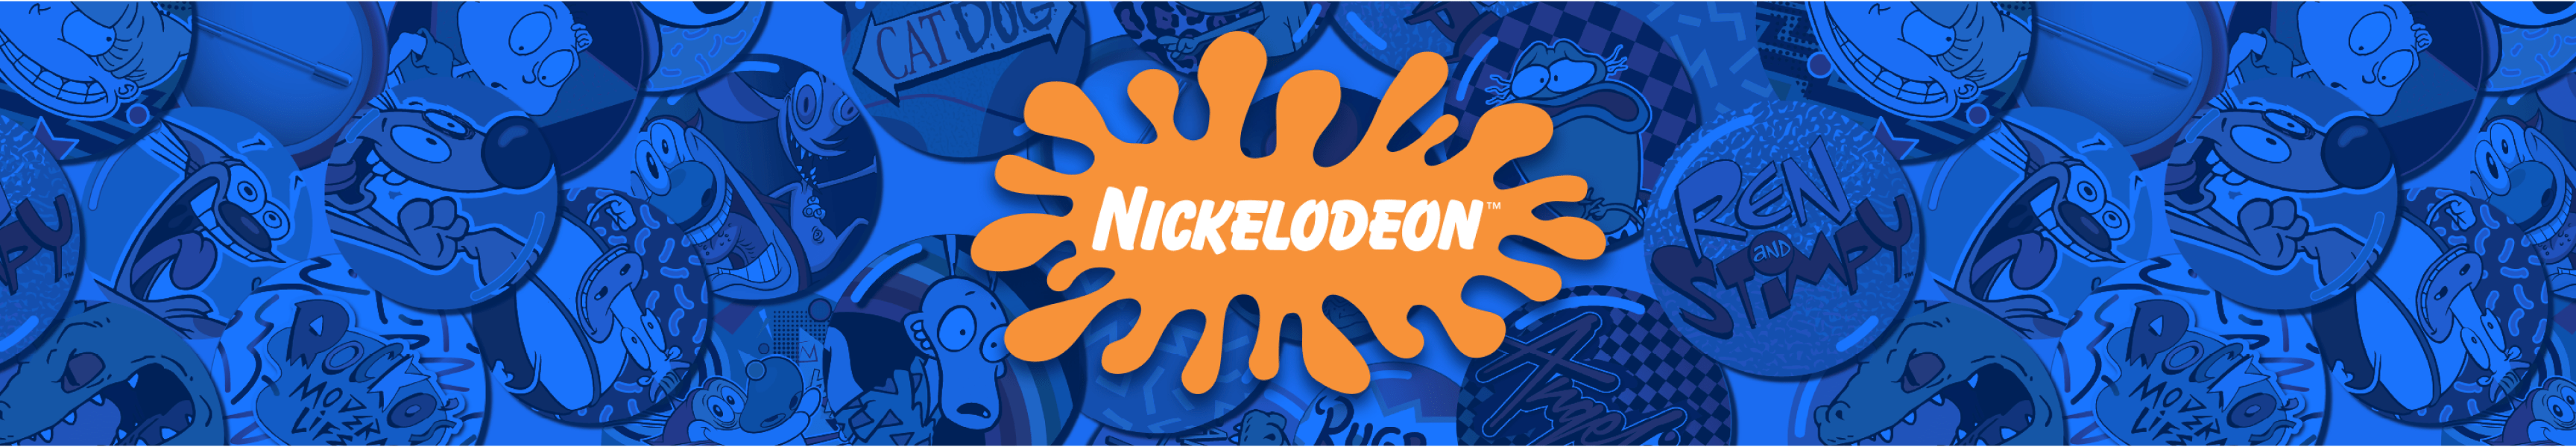 Nickelodeon retro